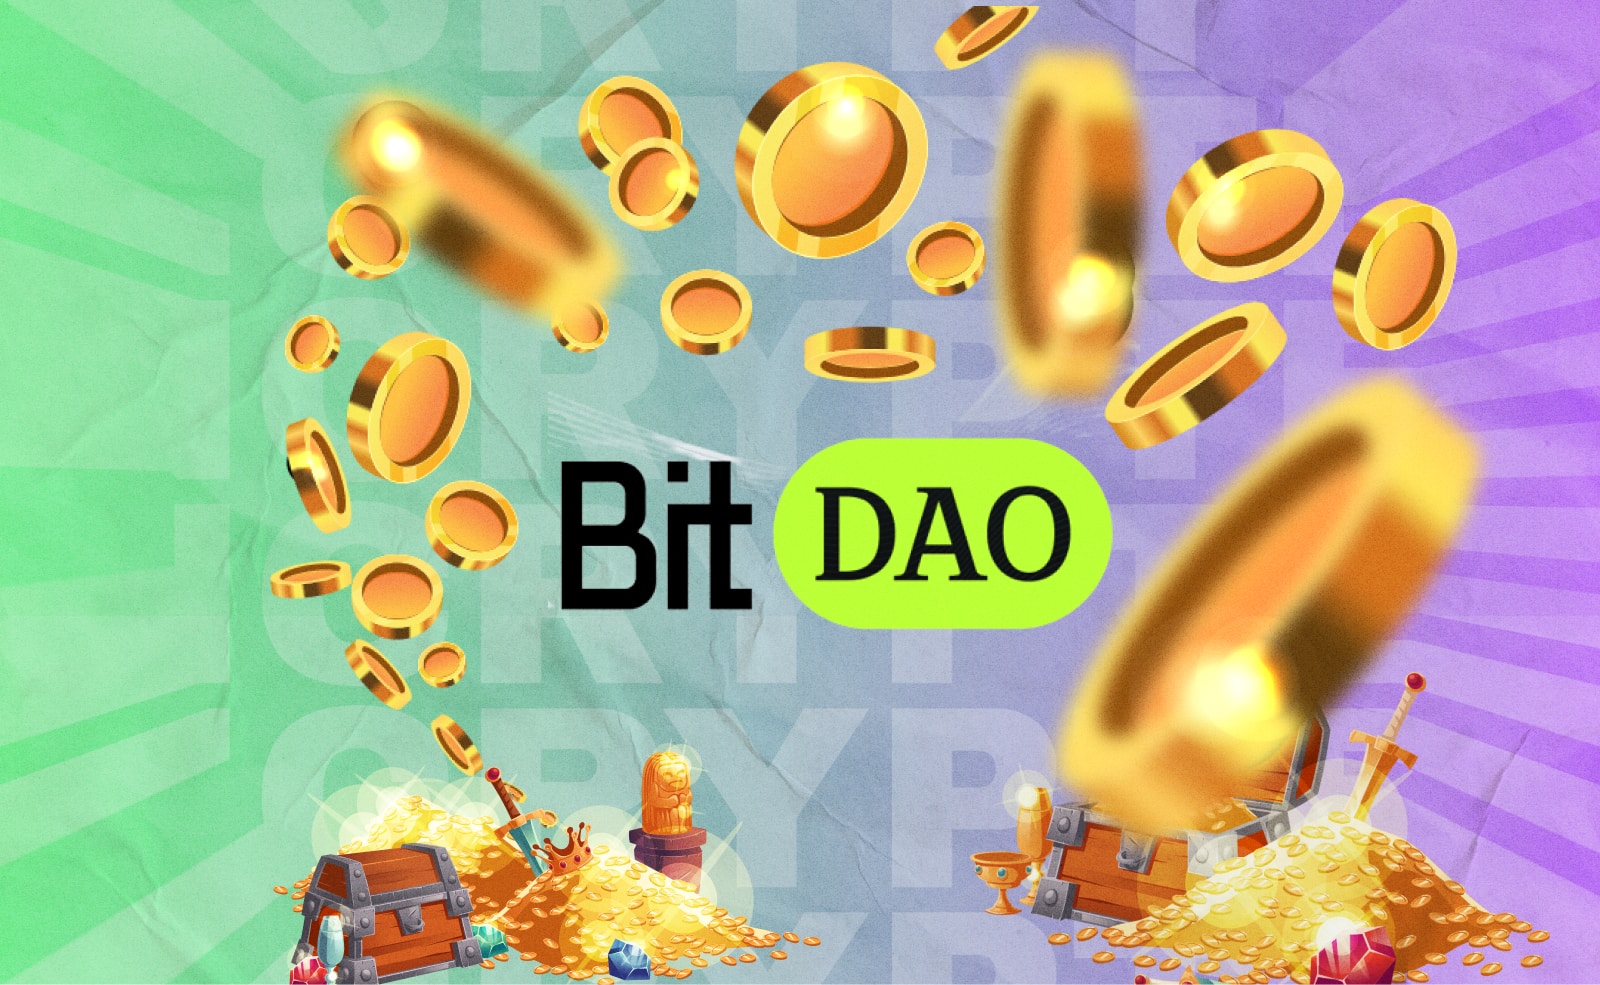 BitDAO обсудит идею выкупа своего нативного токена в следующем году.